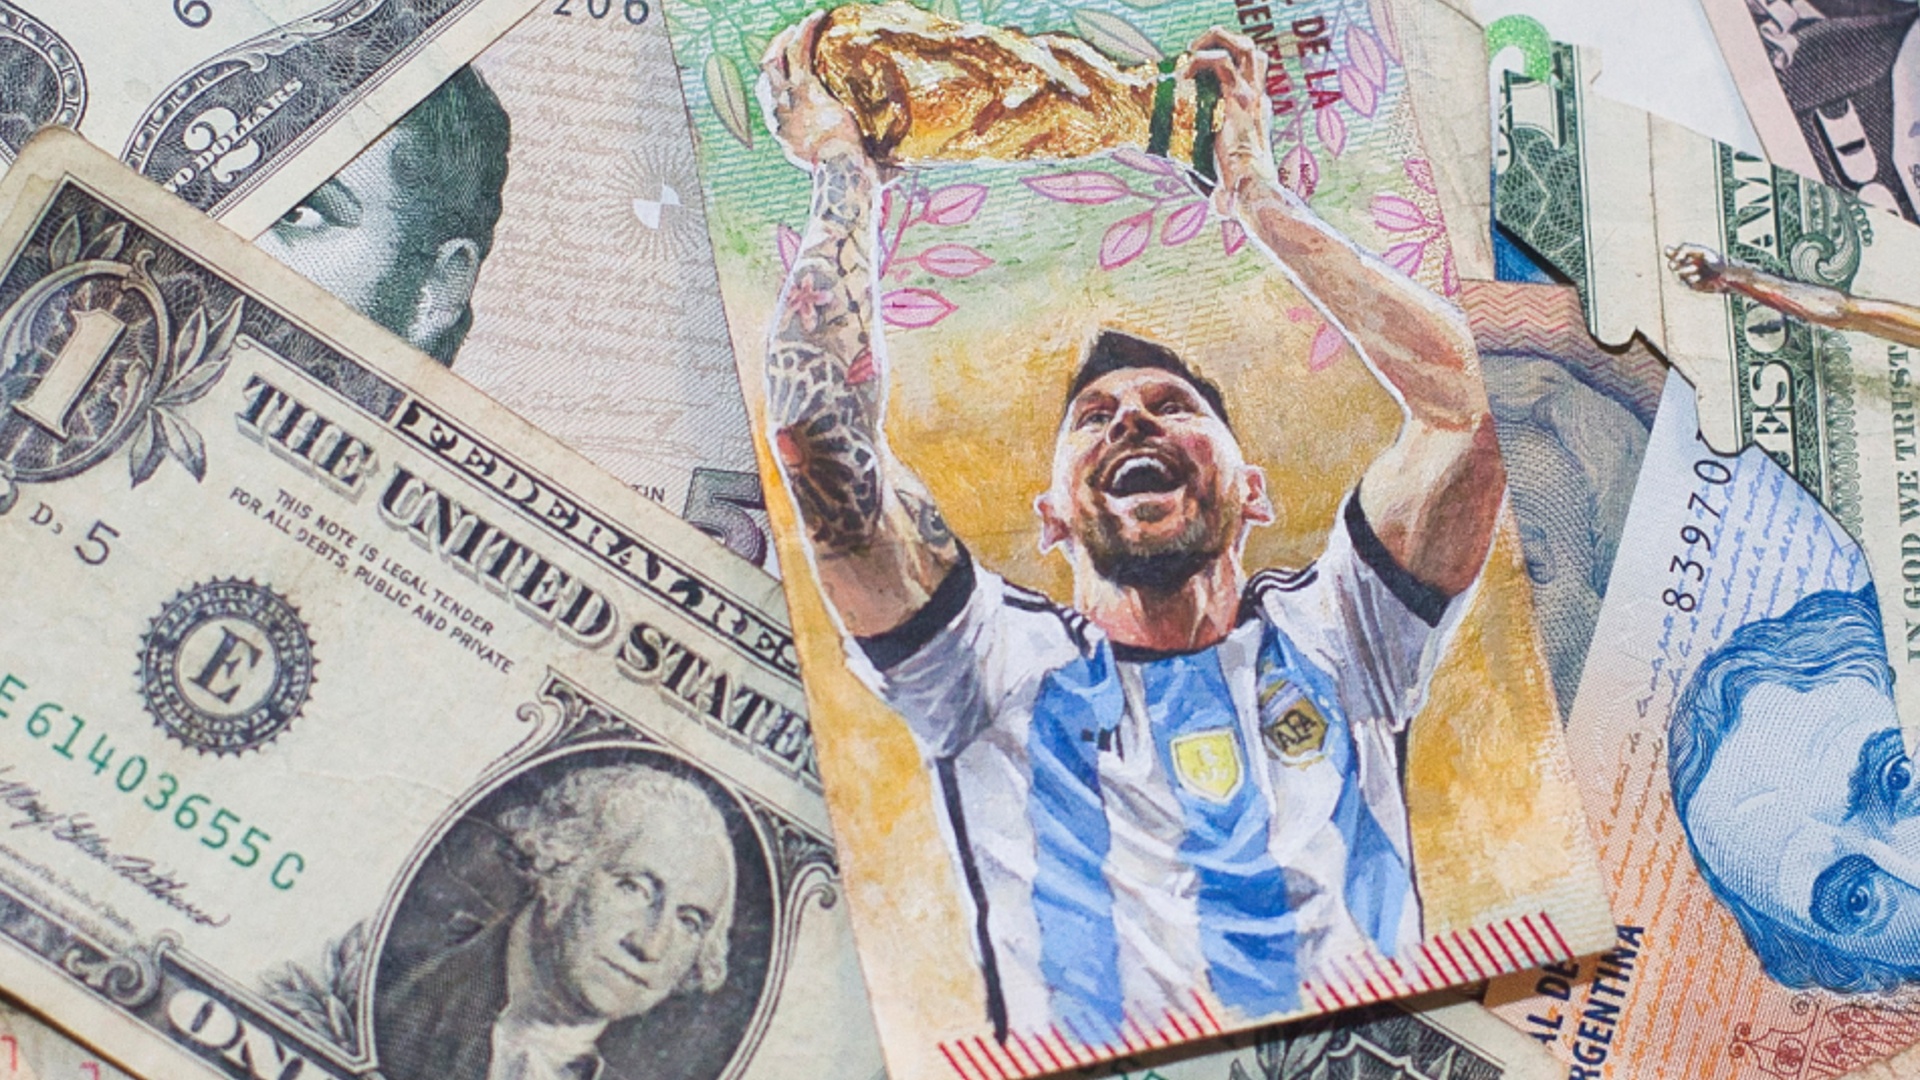 Аргентинец рисует на банкнотах Лионеля Месси, чтобы повысить стоимость песо